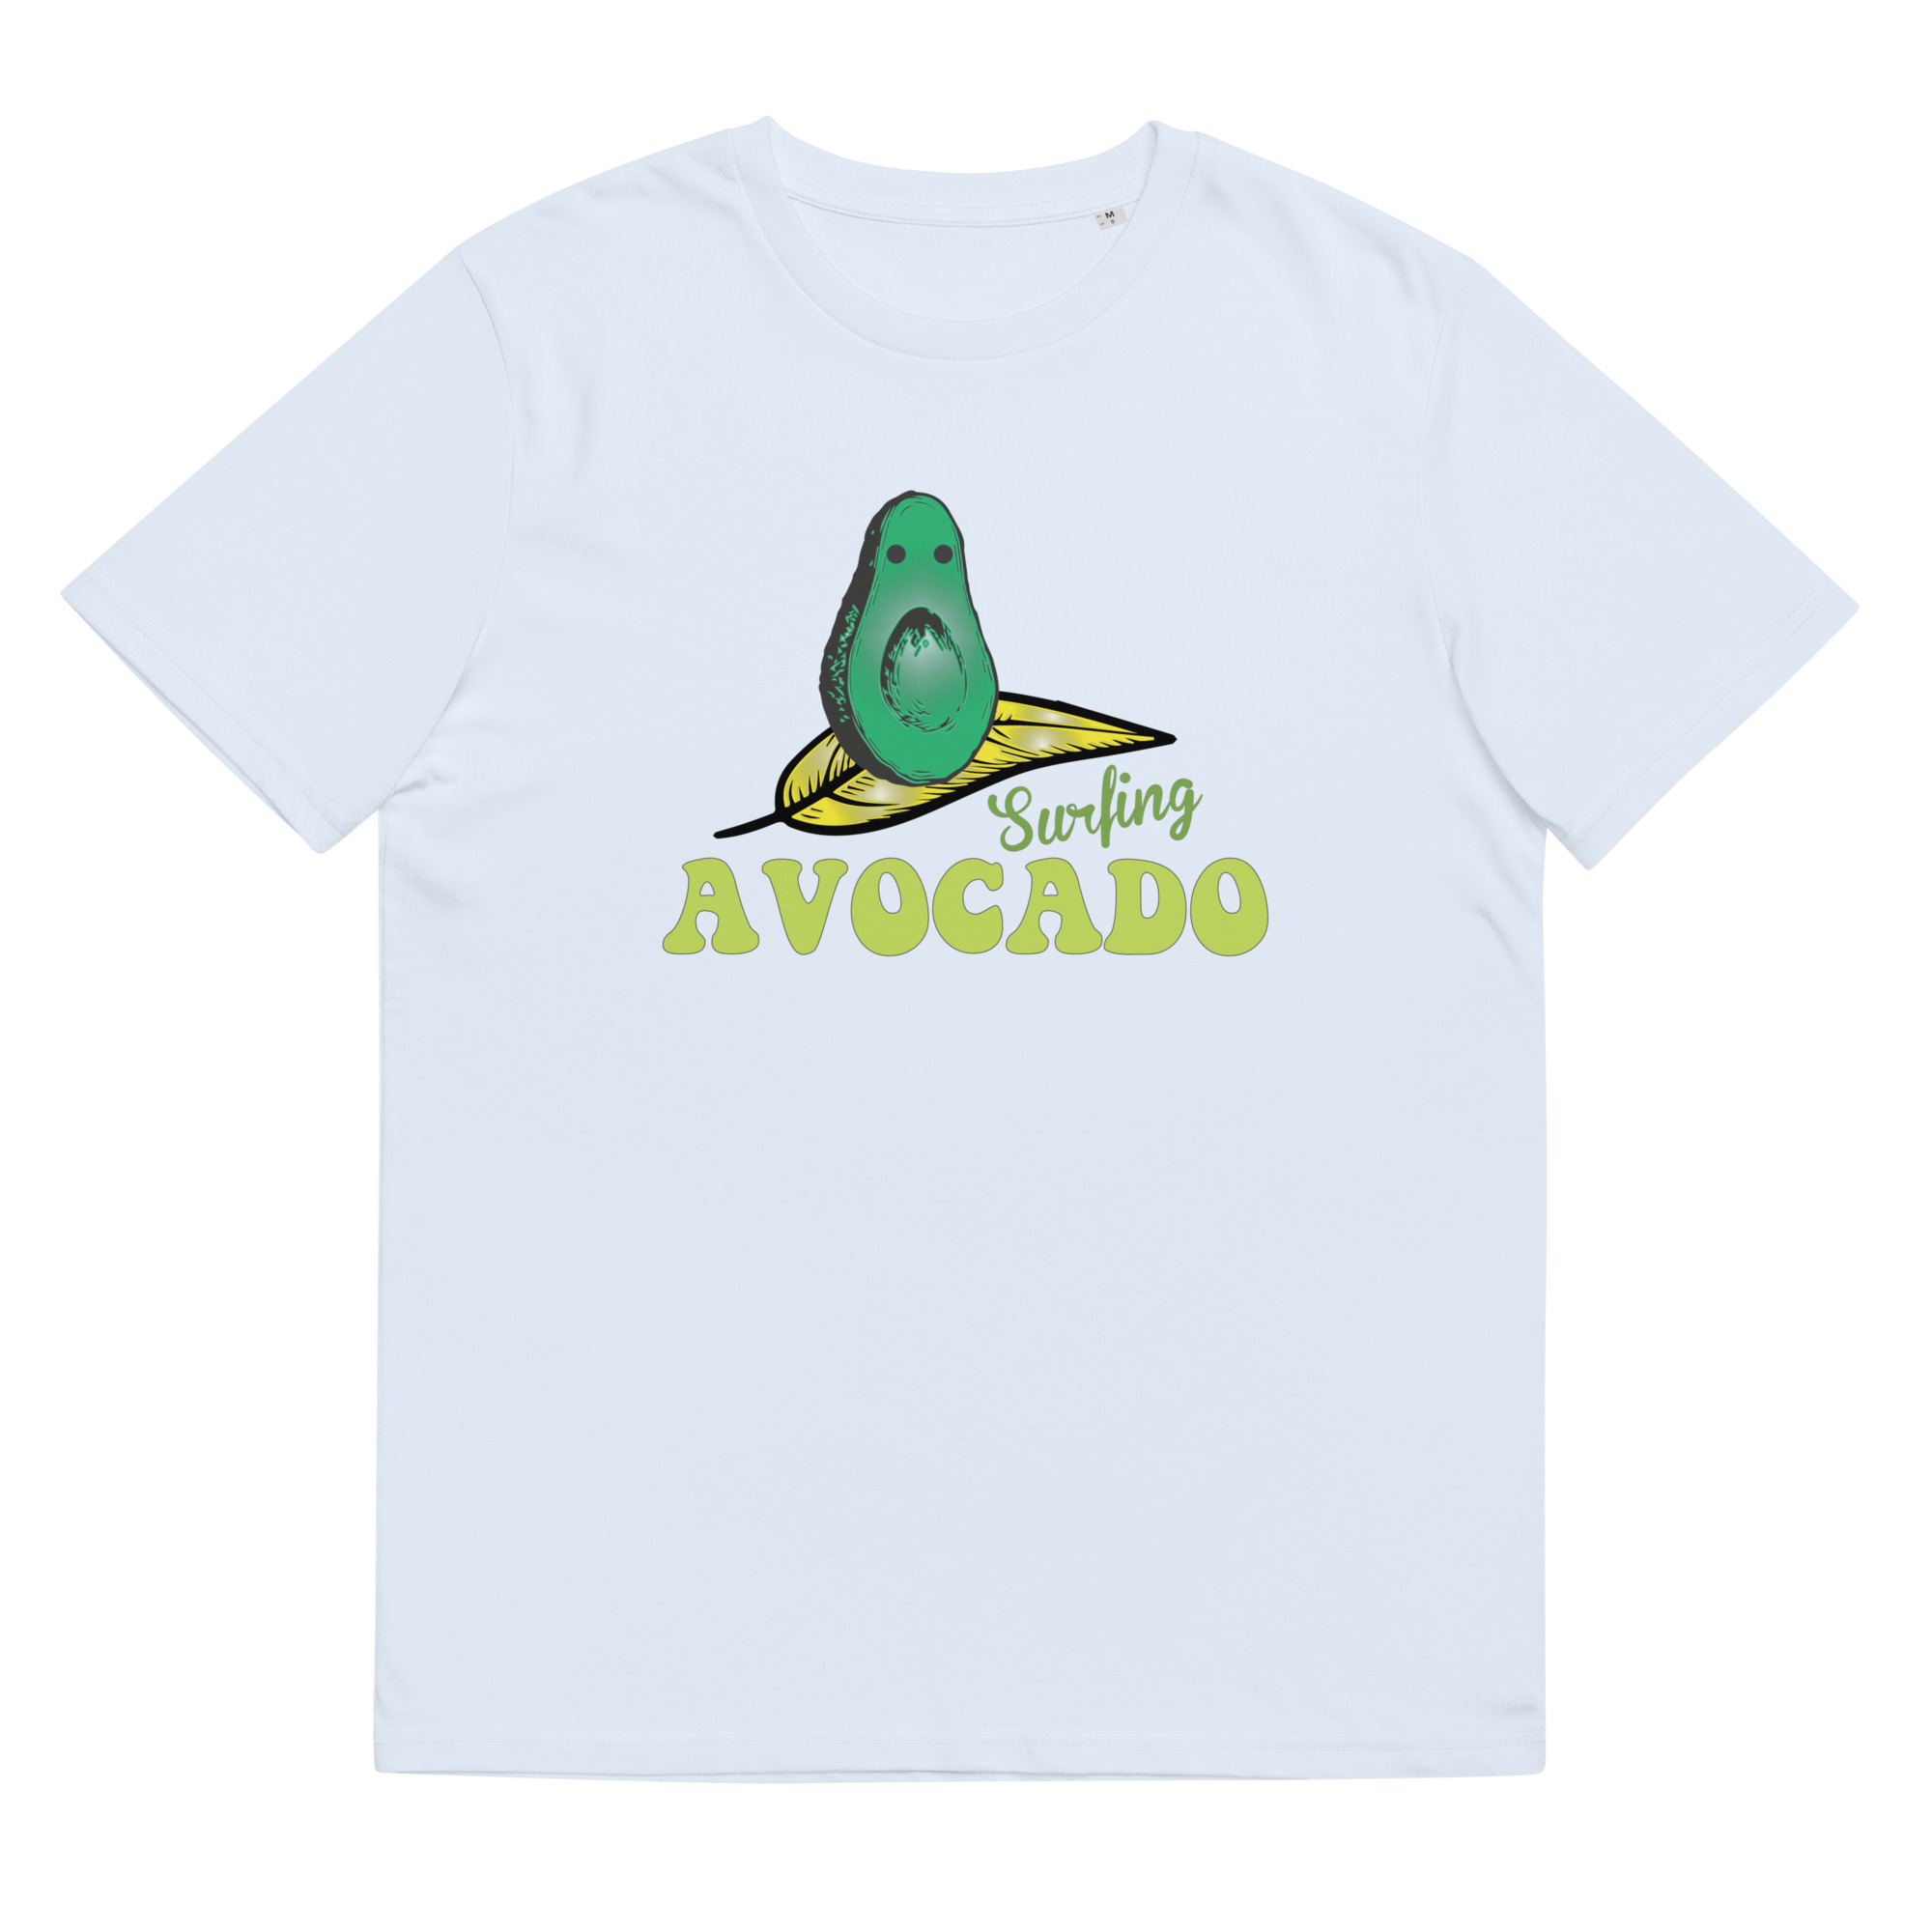 Avocado Surfing On A Leaf - Organic Unisex Avocado T-Shirt